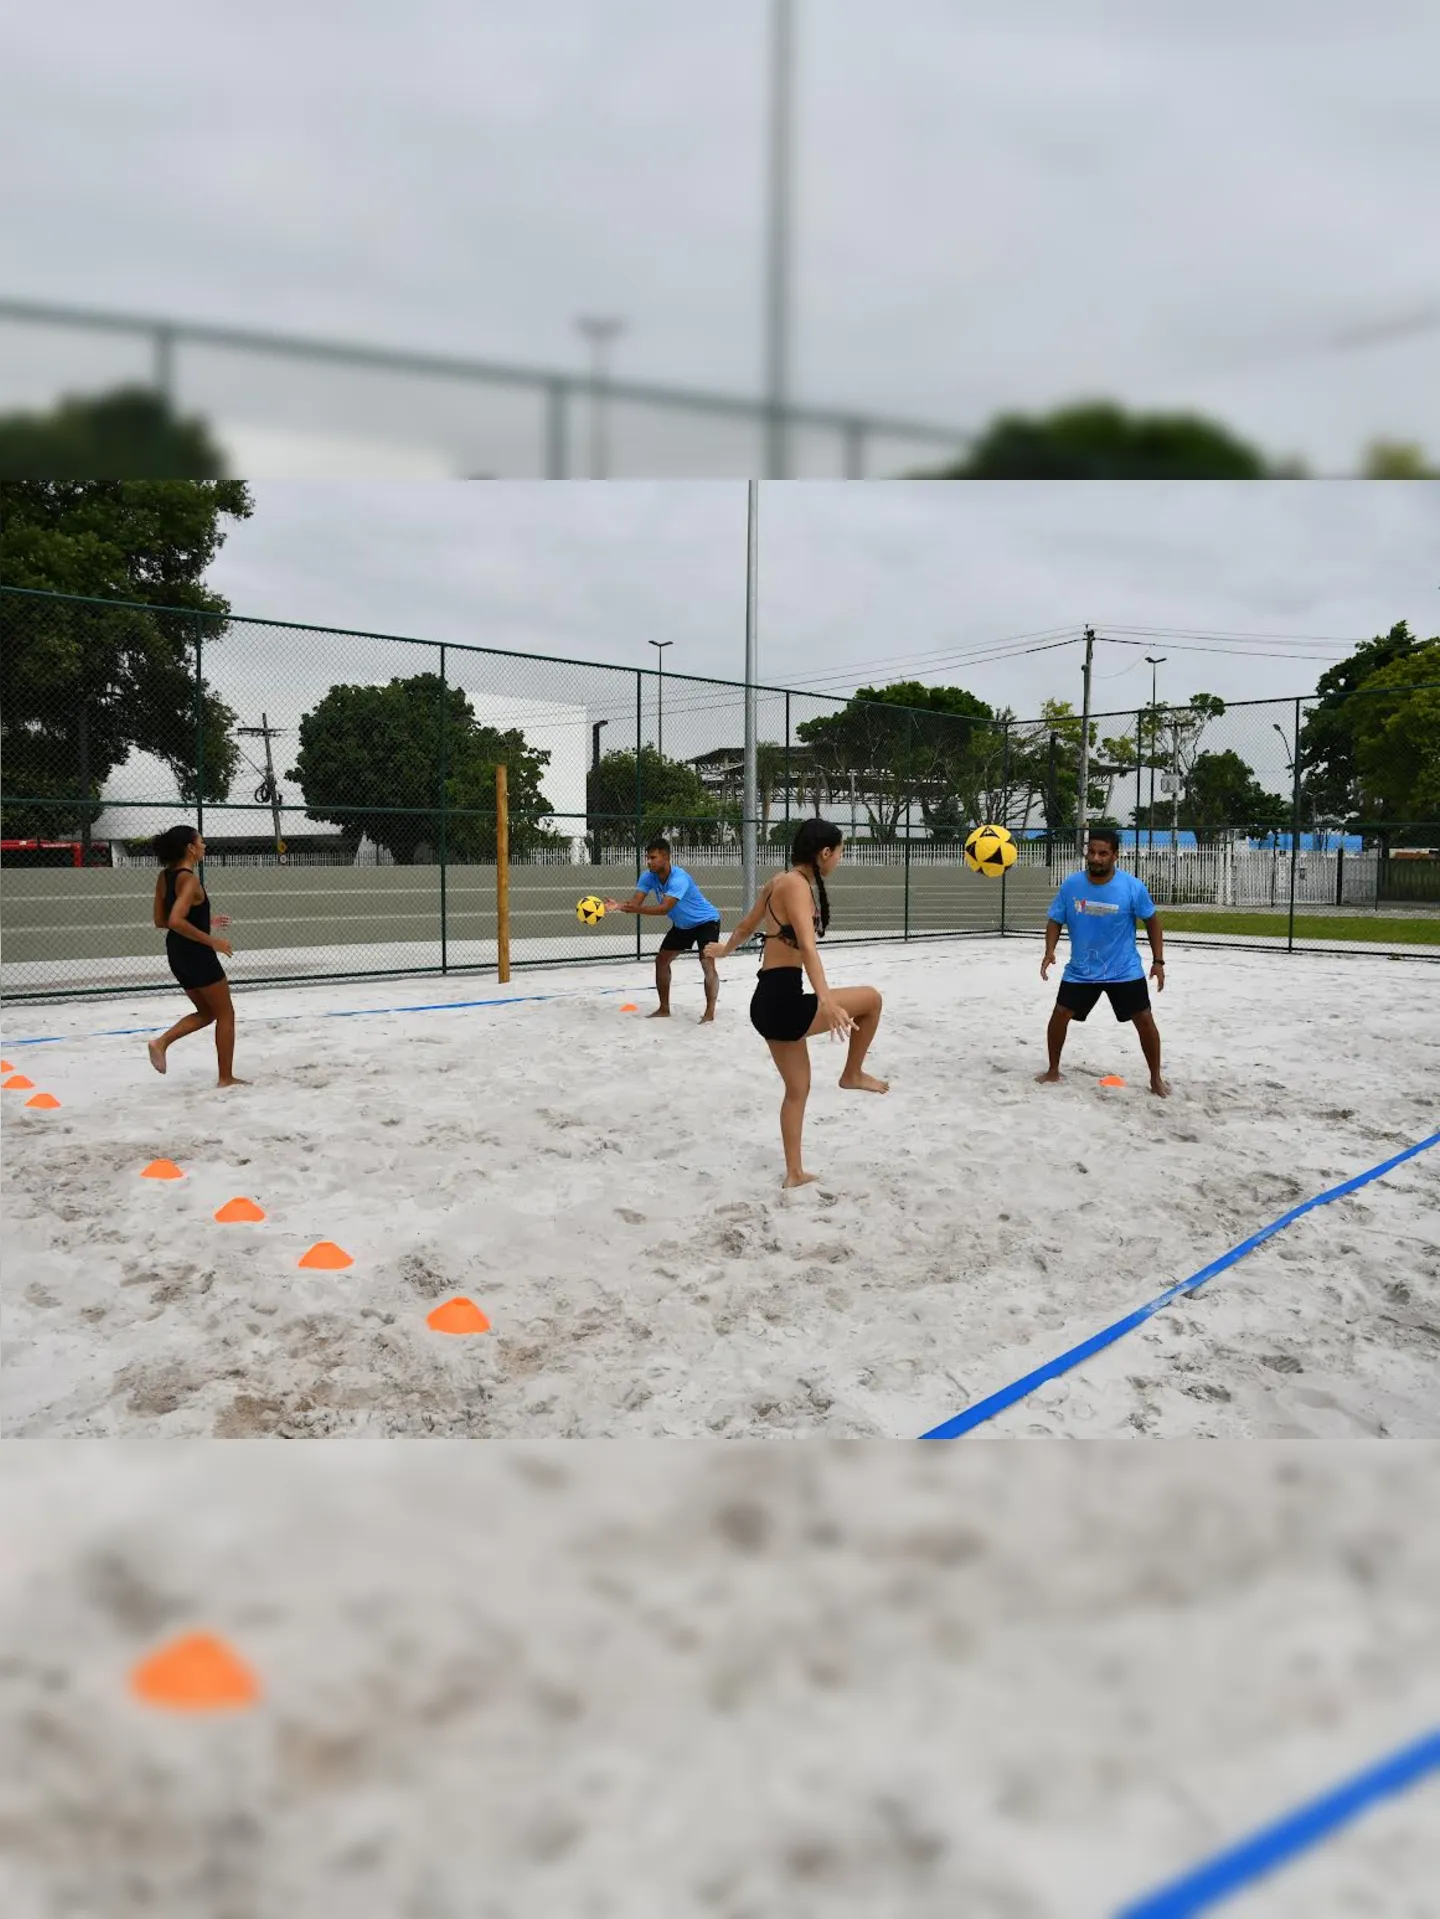 Além de aulas, o Complexo Esportivo de Niterói também promove eventos de integração, incluindo torneios esportivos